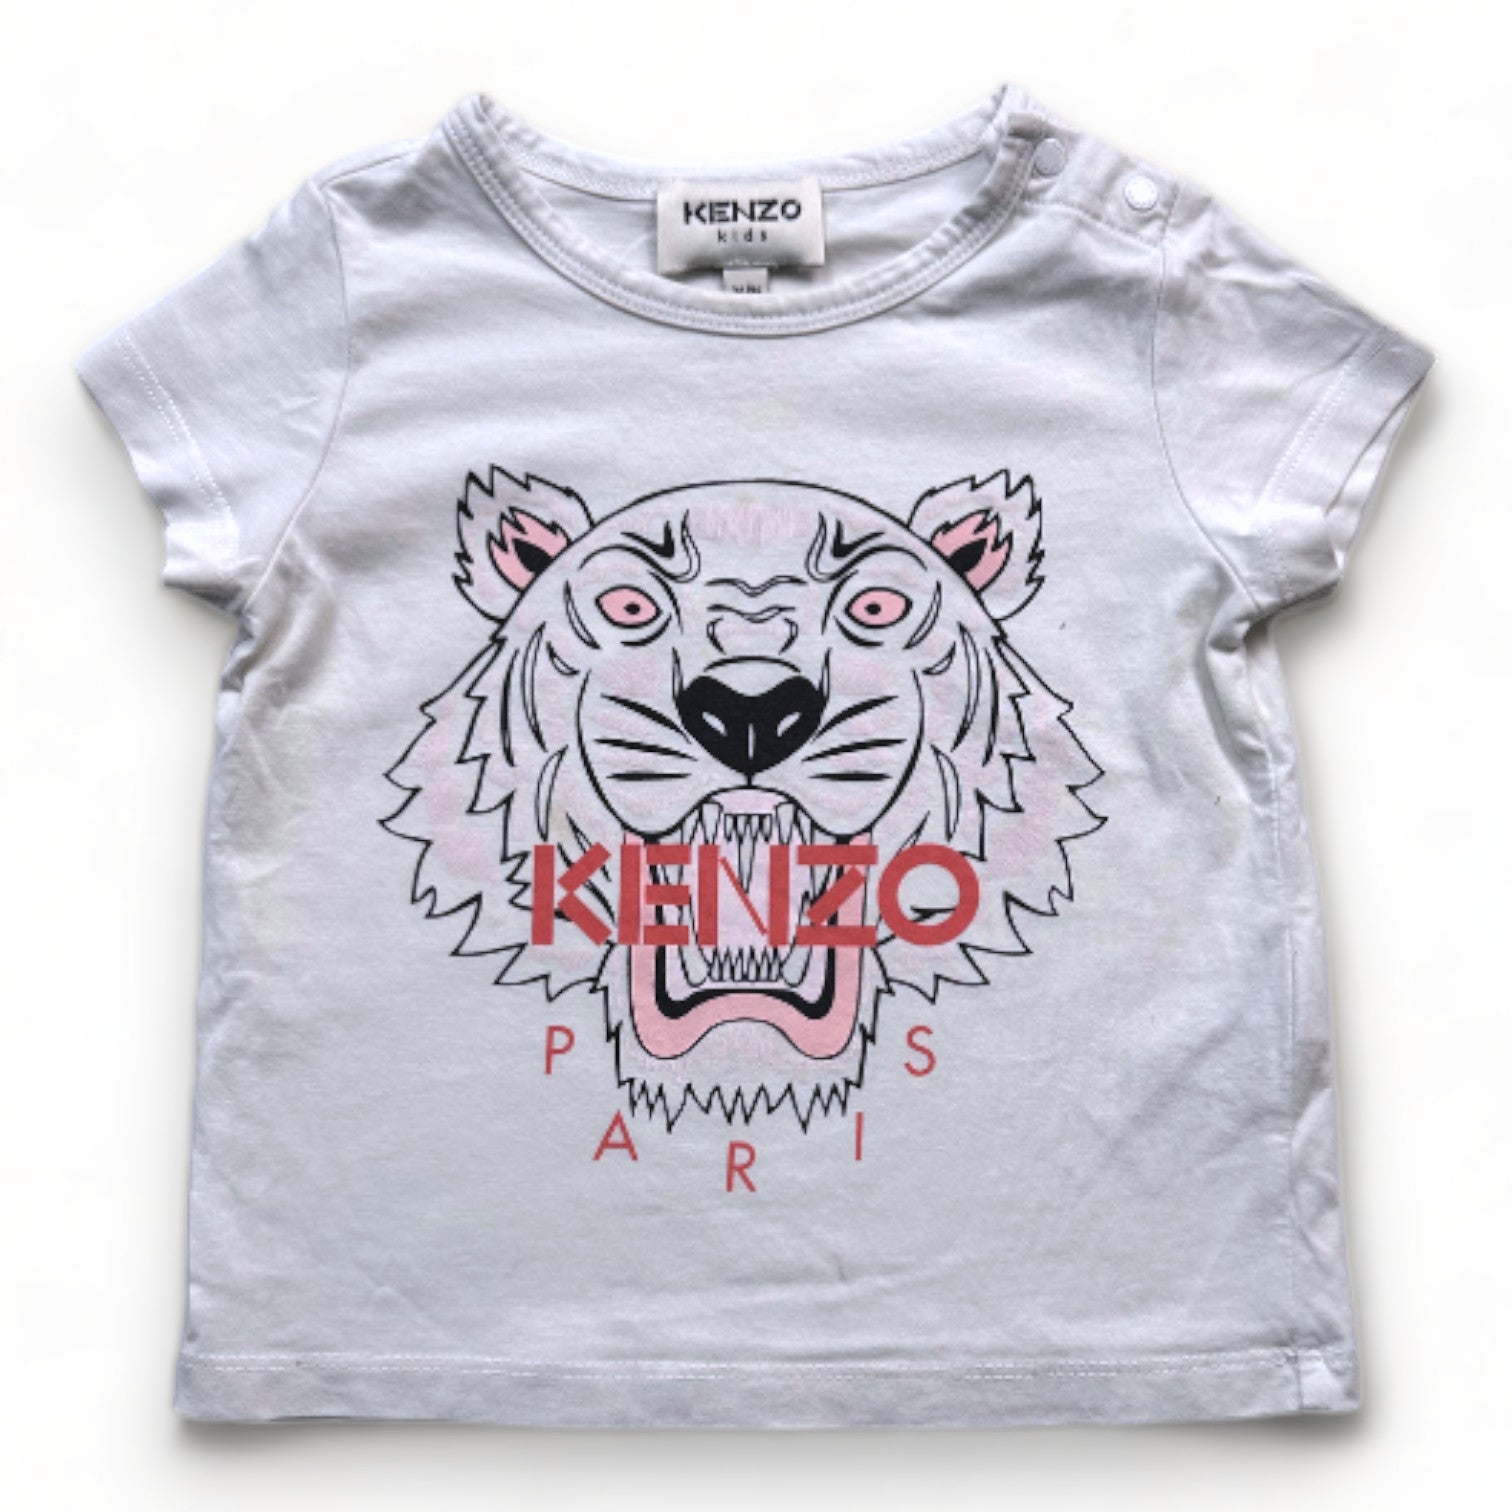 KENZO - T-shirt blanc avec imprimé tigre - 2 ans